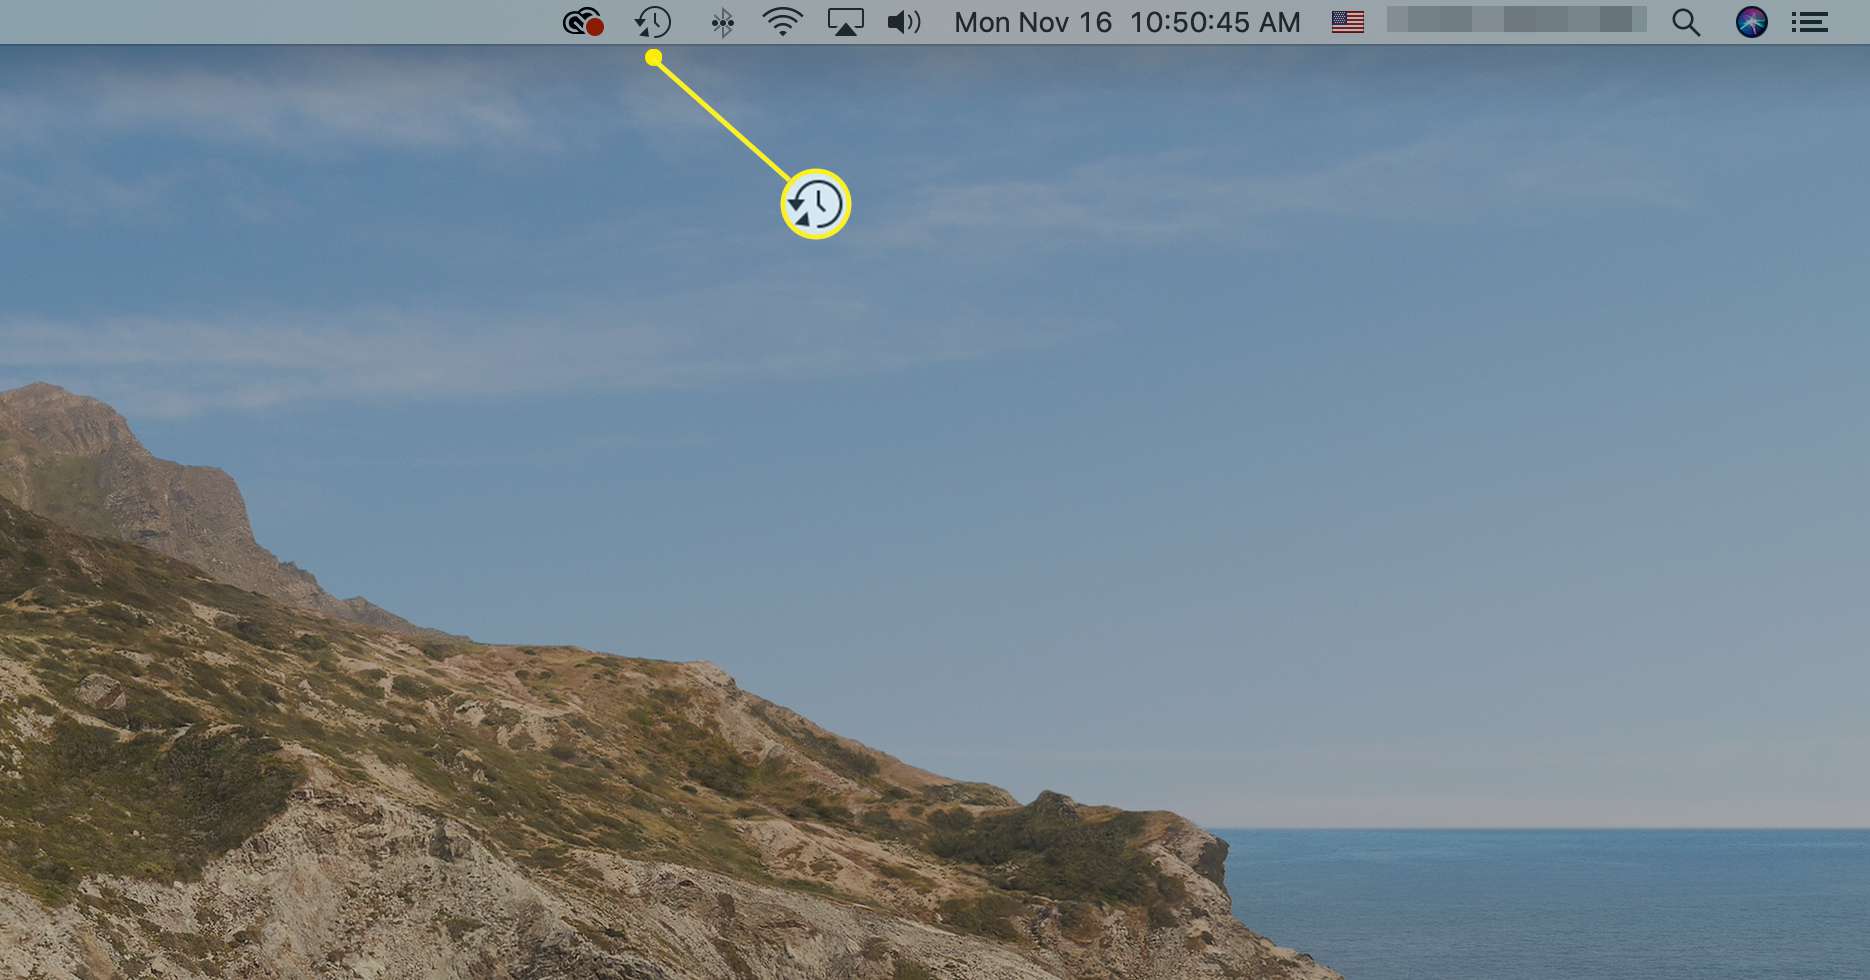 Na panelu nabídek systému Mac je zvýrazněna ikona Time Machine